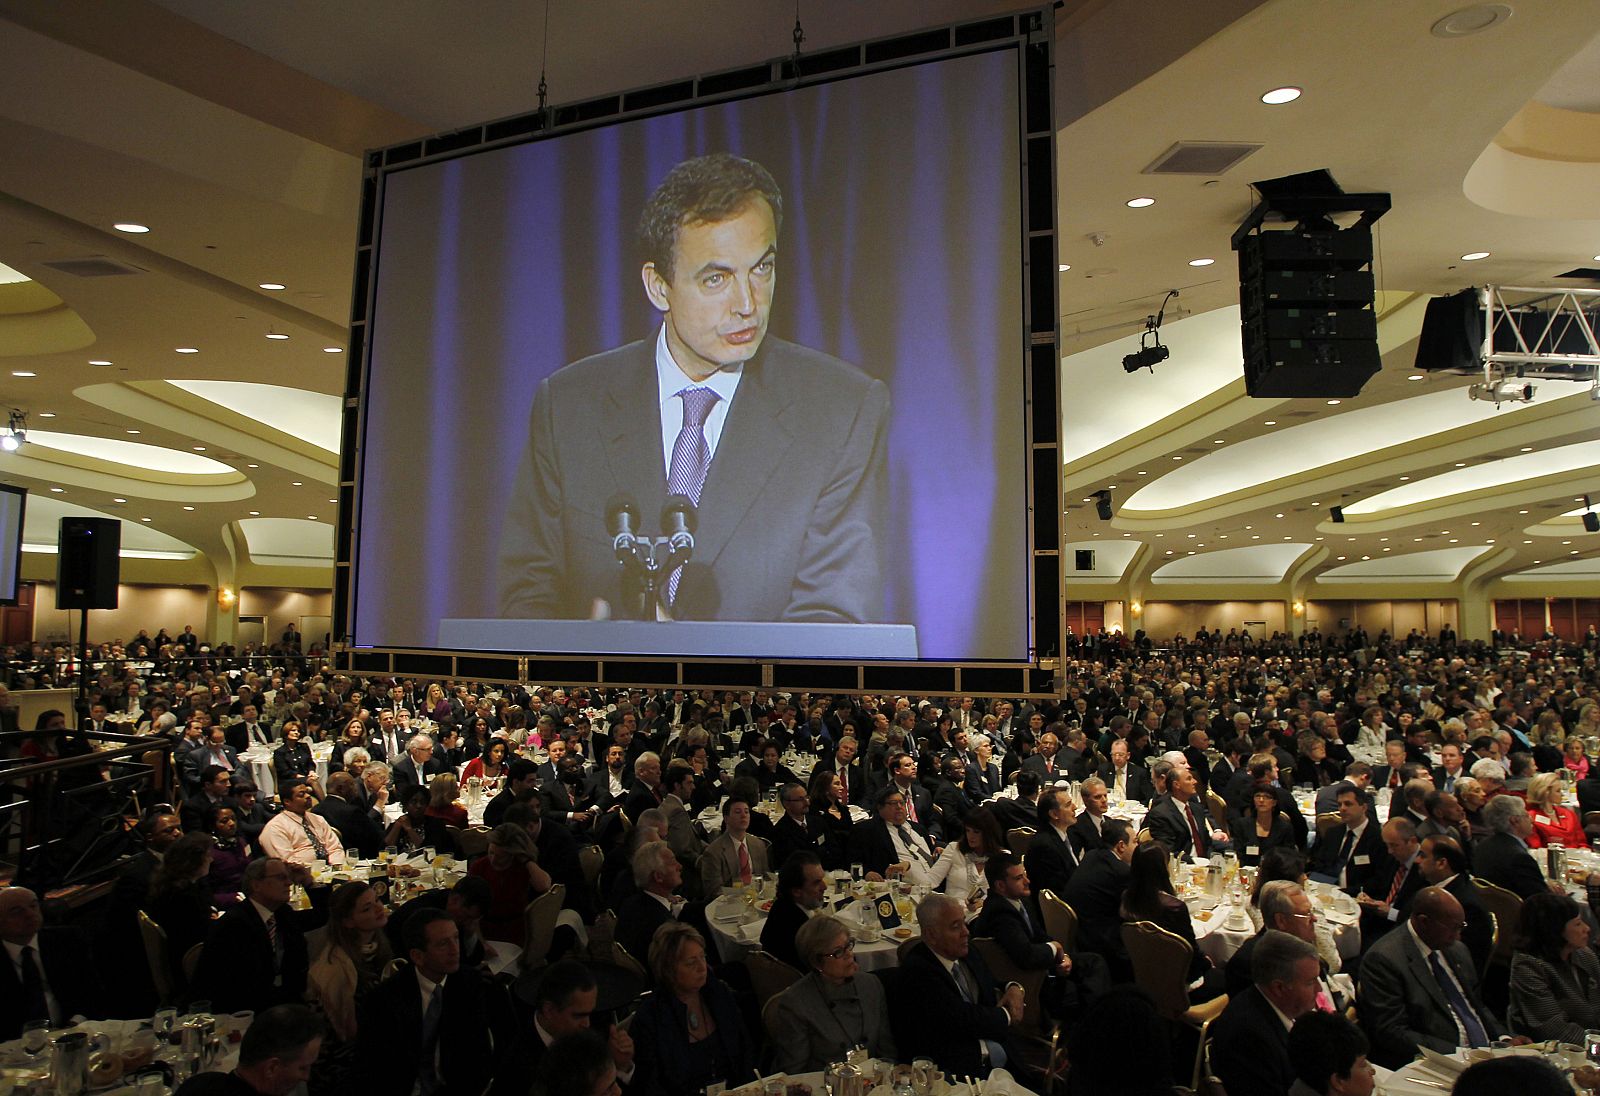 Una televisión gigante proyecta el discurso del presidente español, José Luis Rodríguez Zapatero, en el Desayuno Nacional de la Oración en Washington.